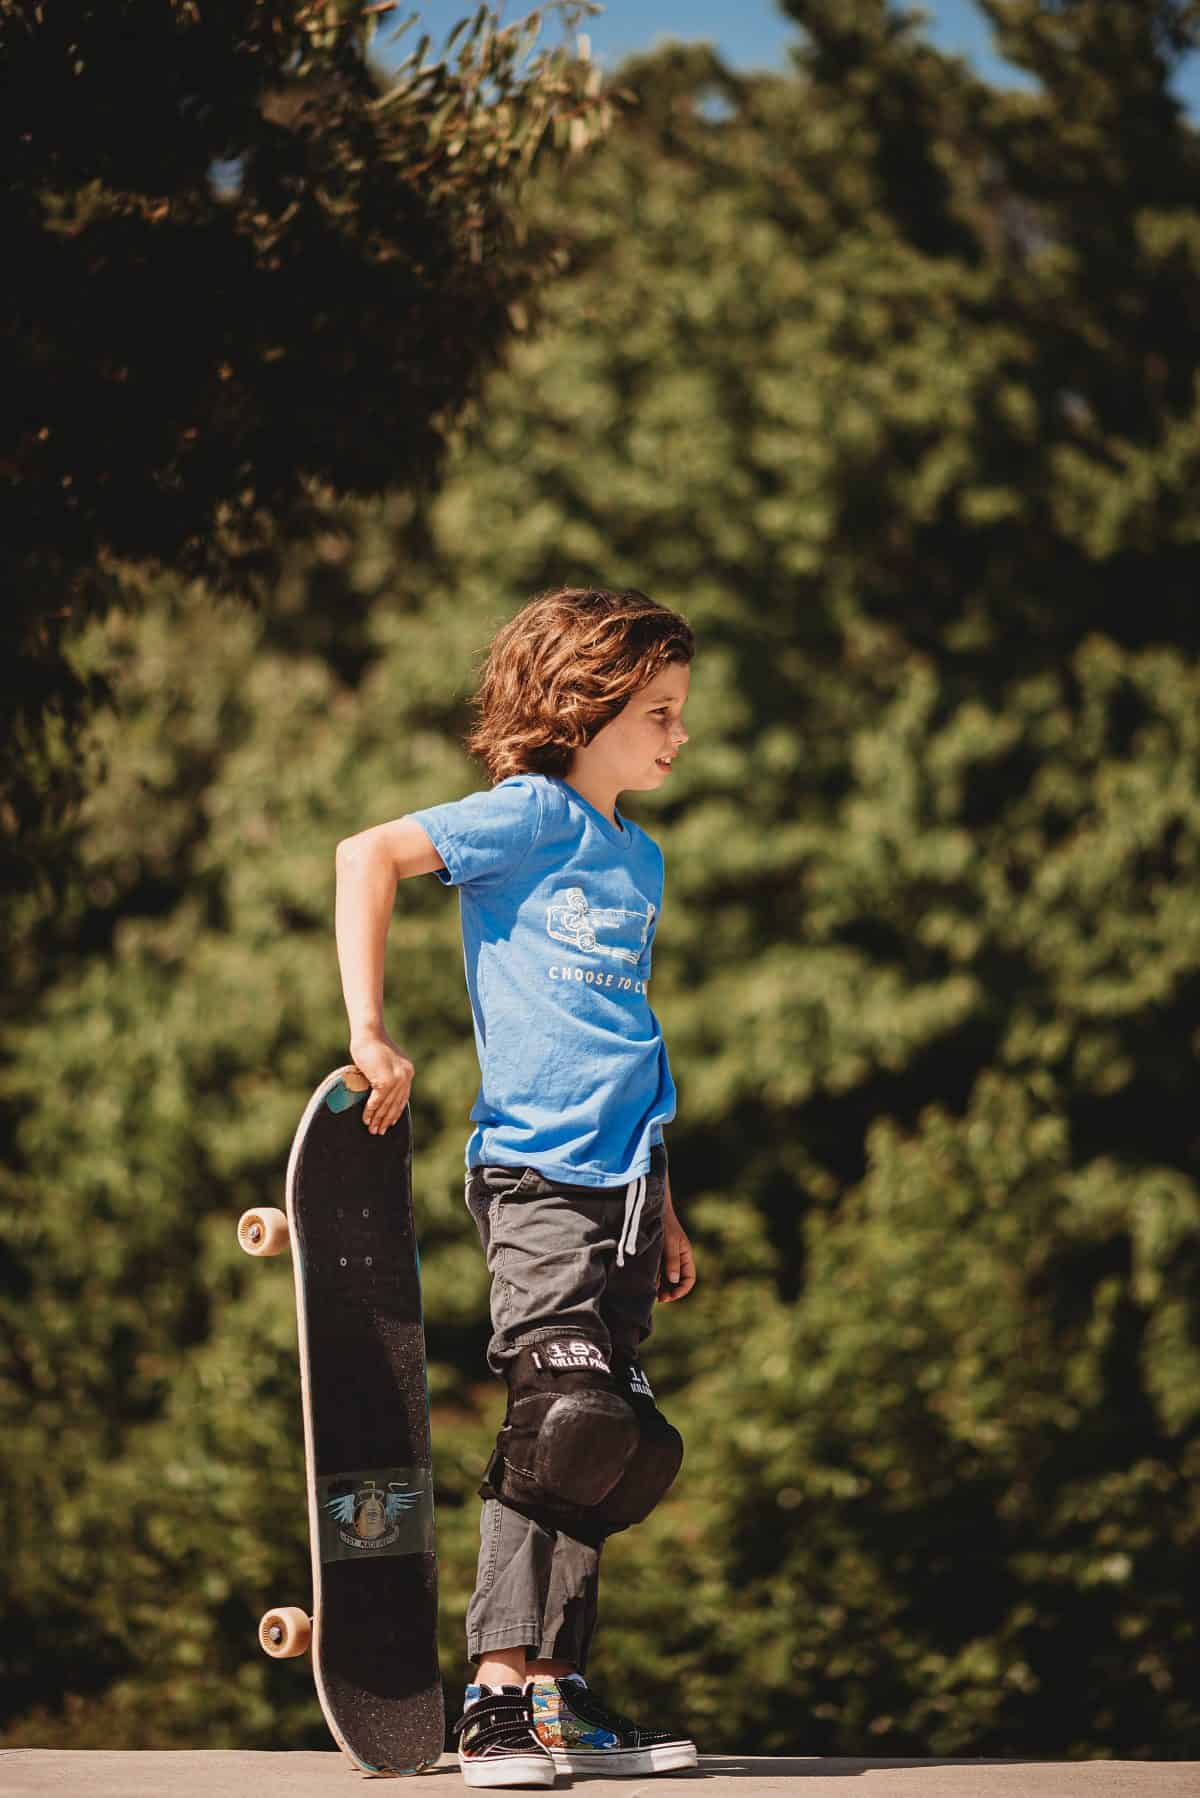 Mount Bank gewicht Om te mediteren Skateboarding for Kids 101 : Skate Safety, Advice for Parents & Best Gear